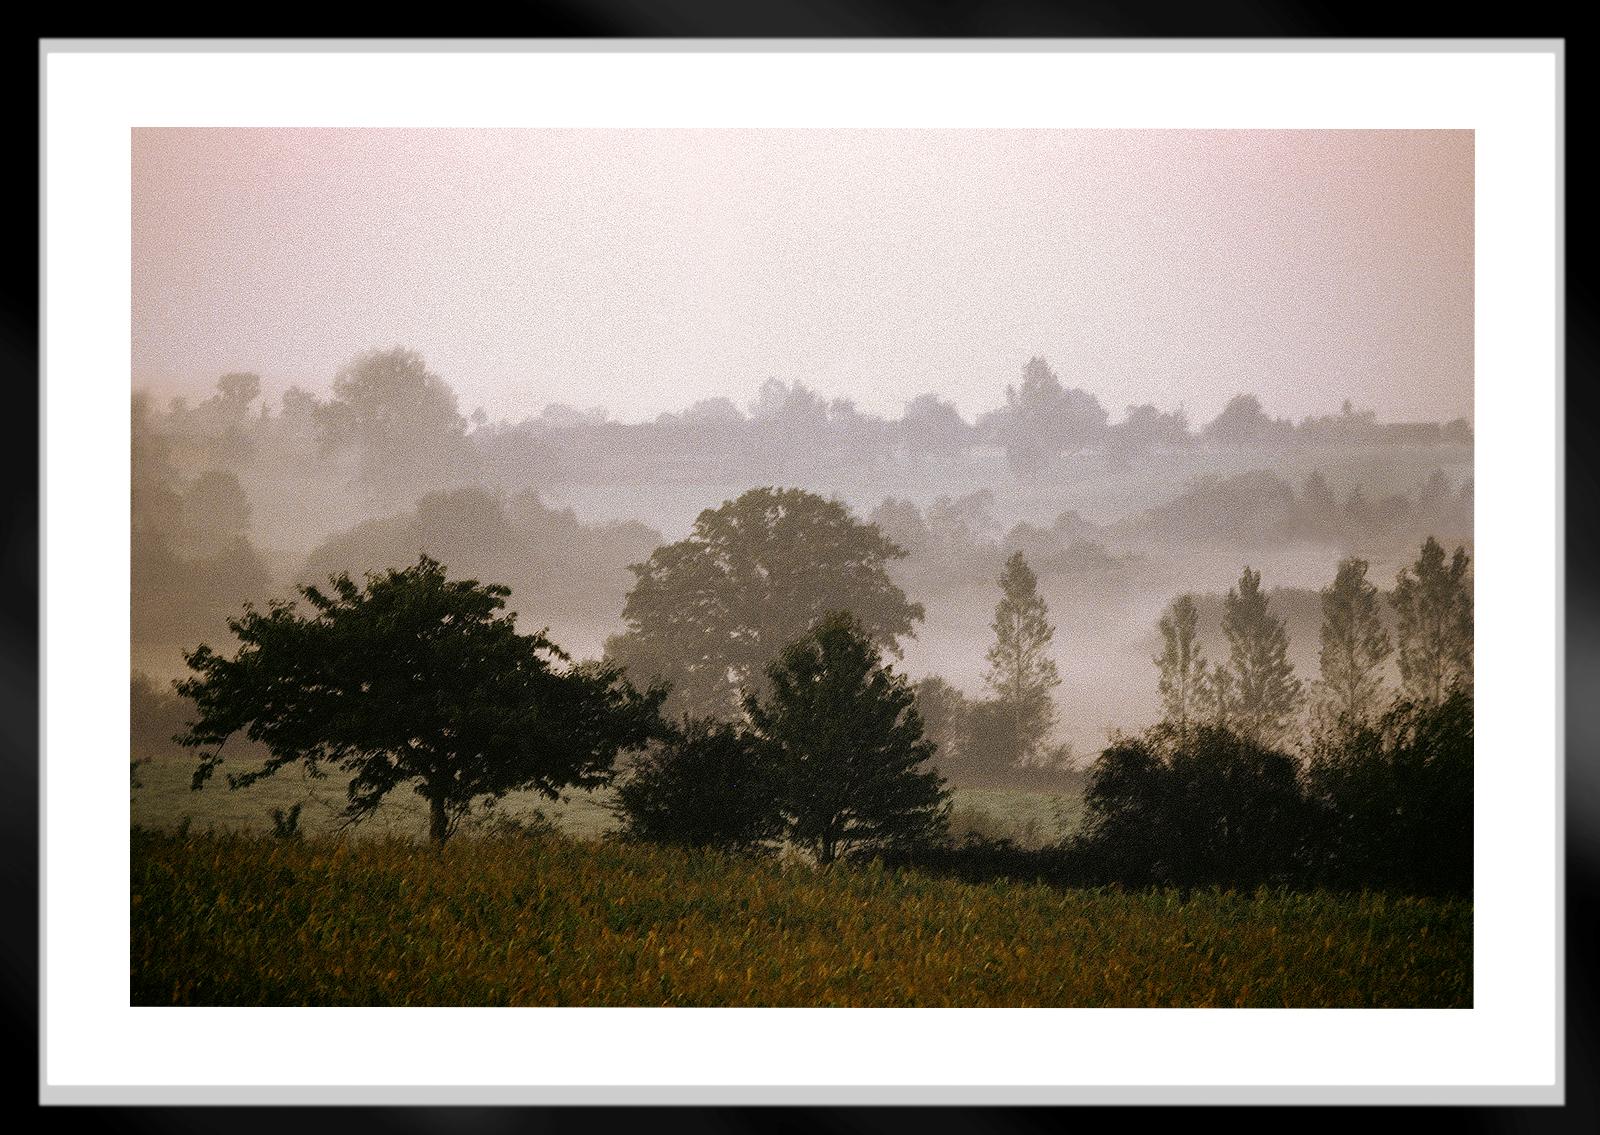 Mayenne – signierter Landschaftsdruck in limitierter Auflage, Farbfoto, zeitgenössisch (Beige), Landscape Photograph, von Ian Sanderson